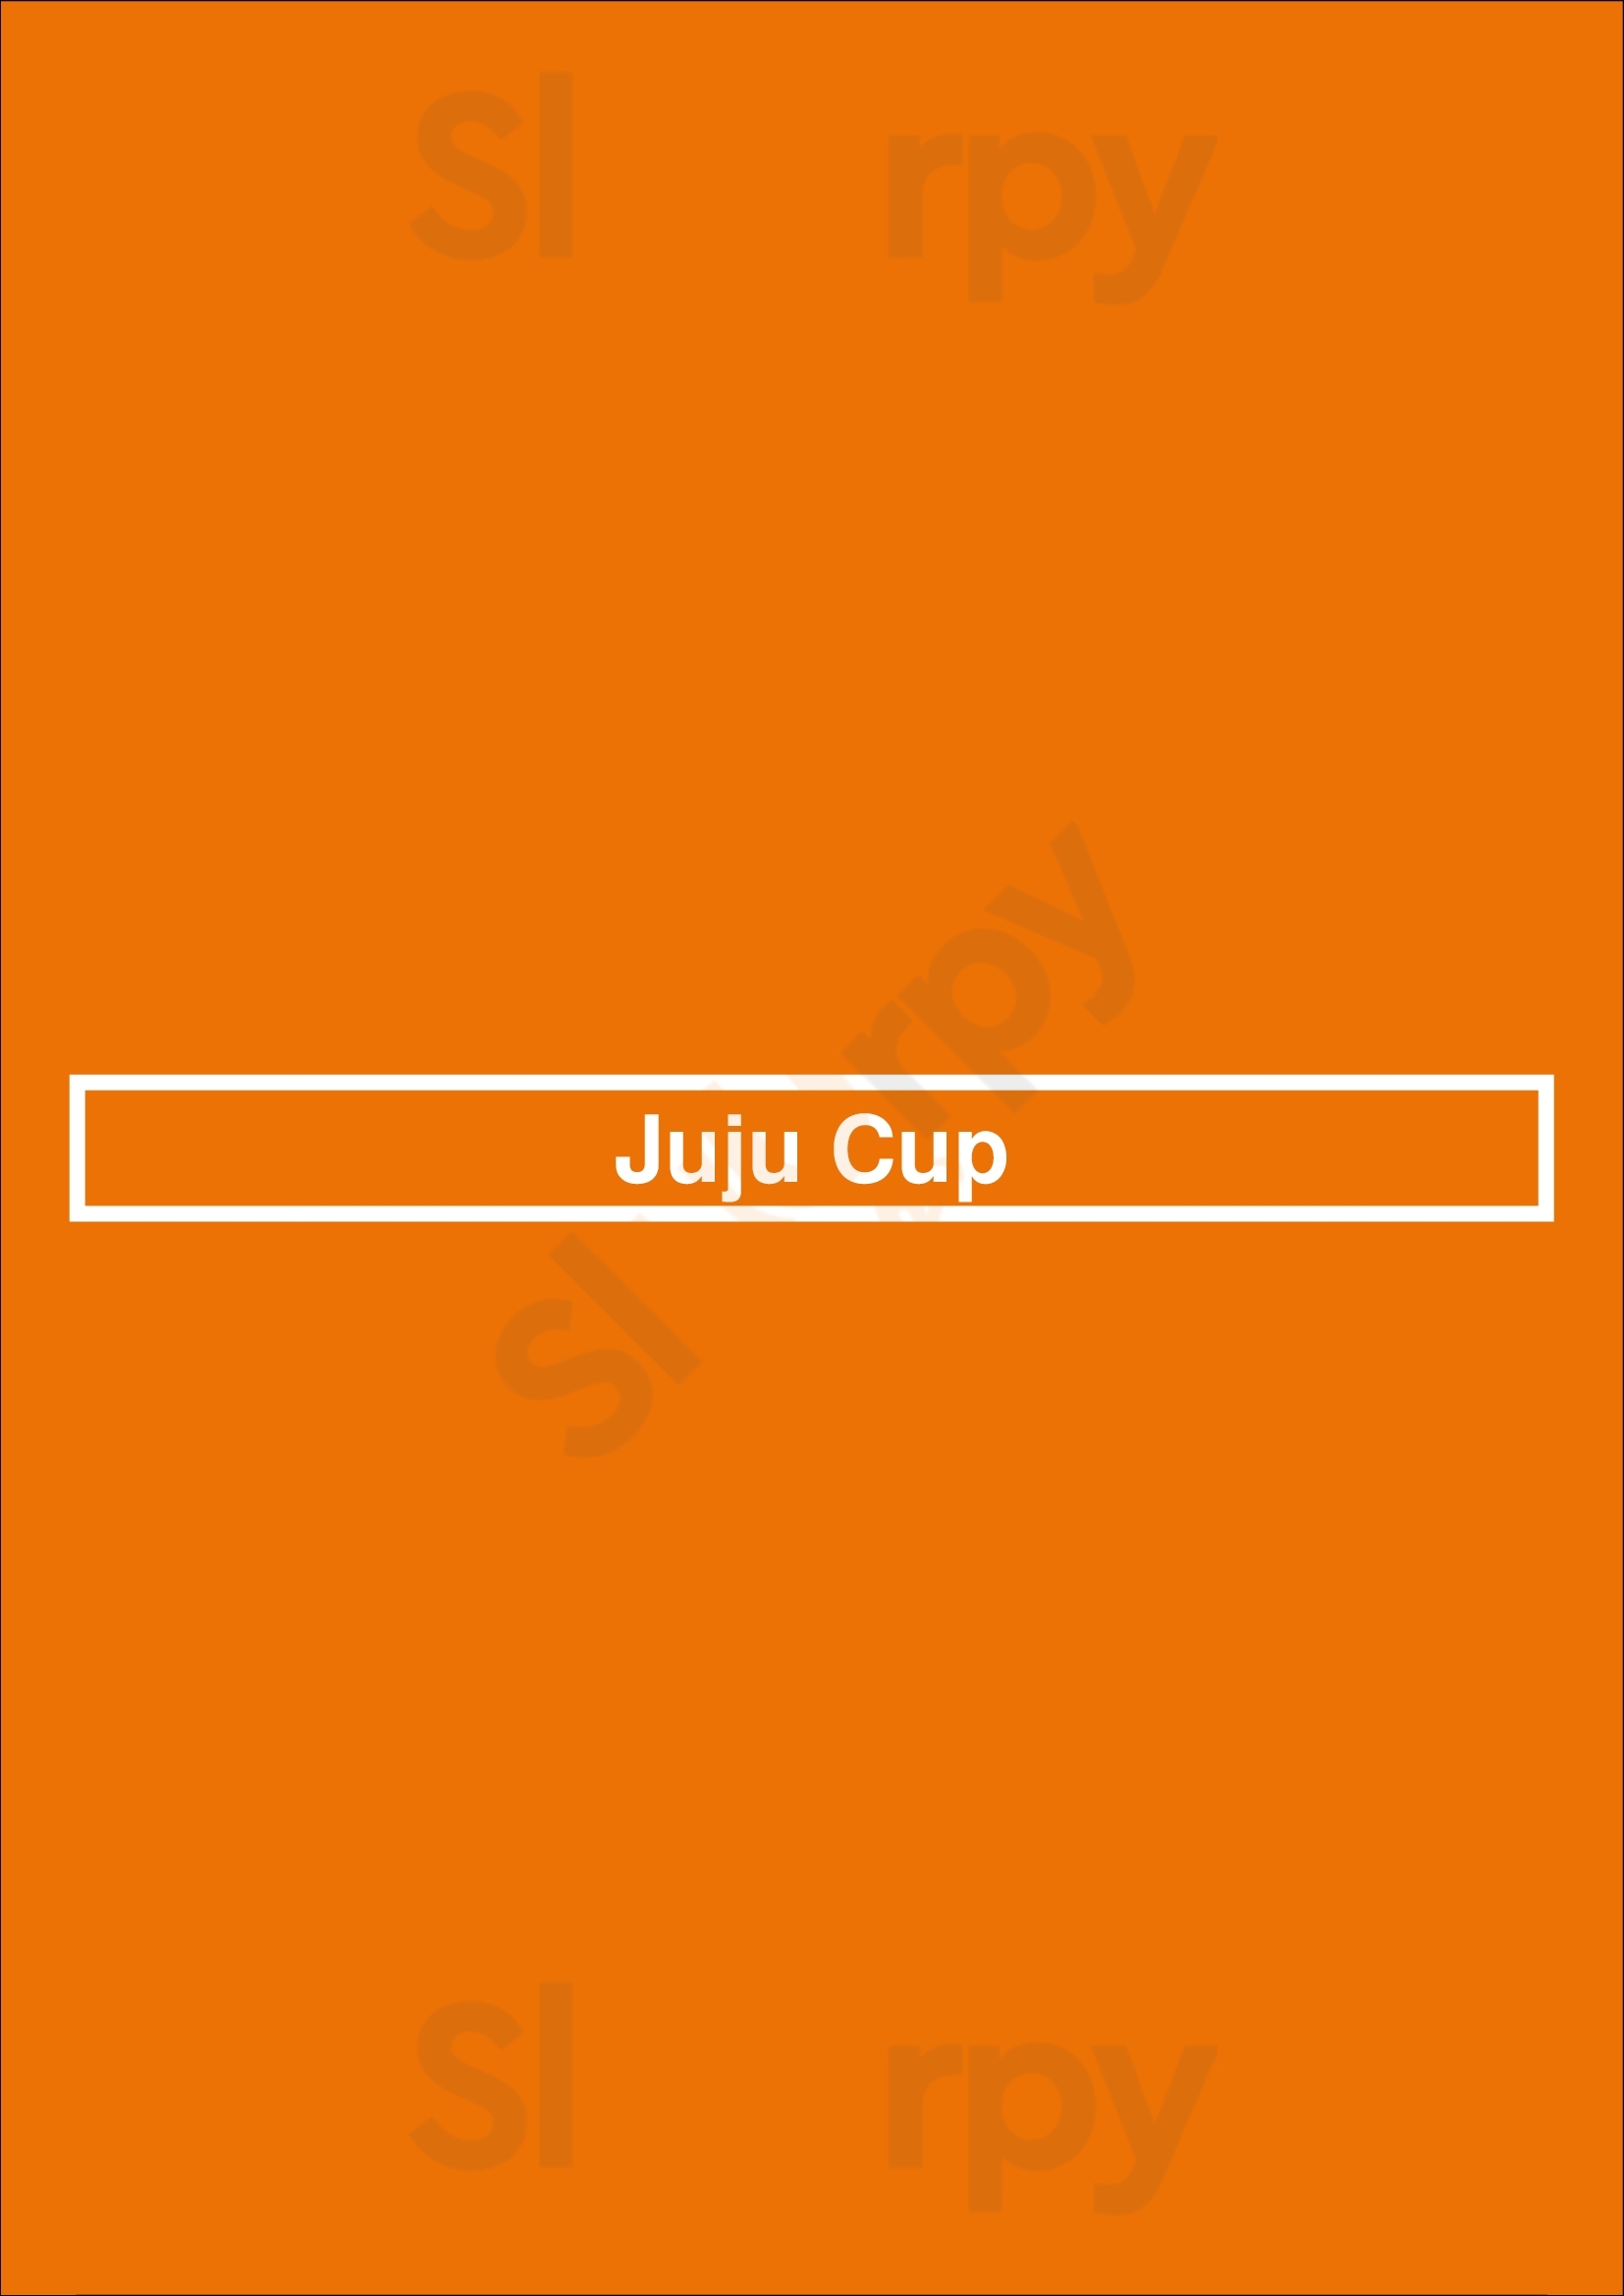 Juju Cup Houston Menu - 1